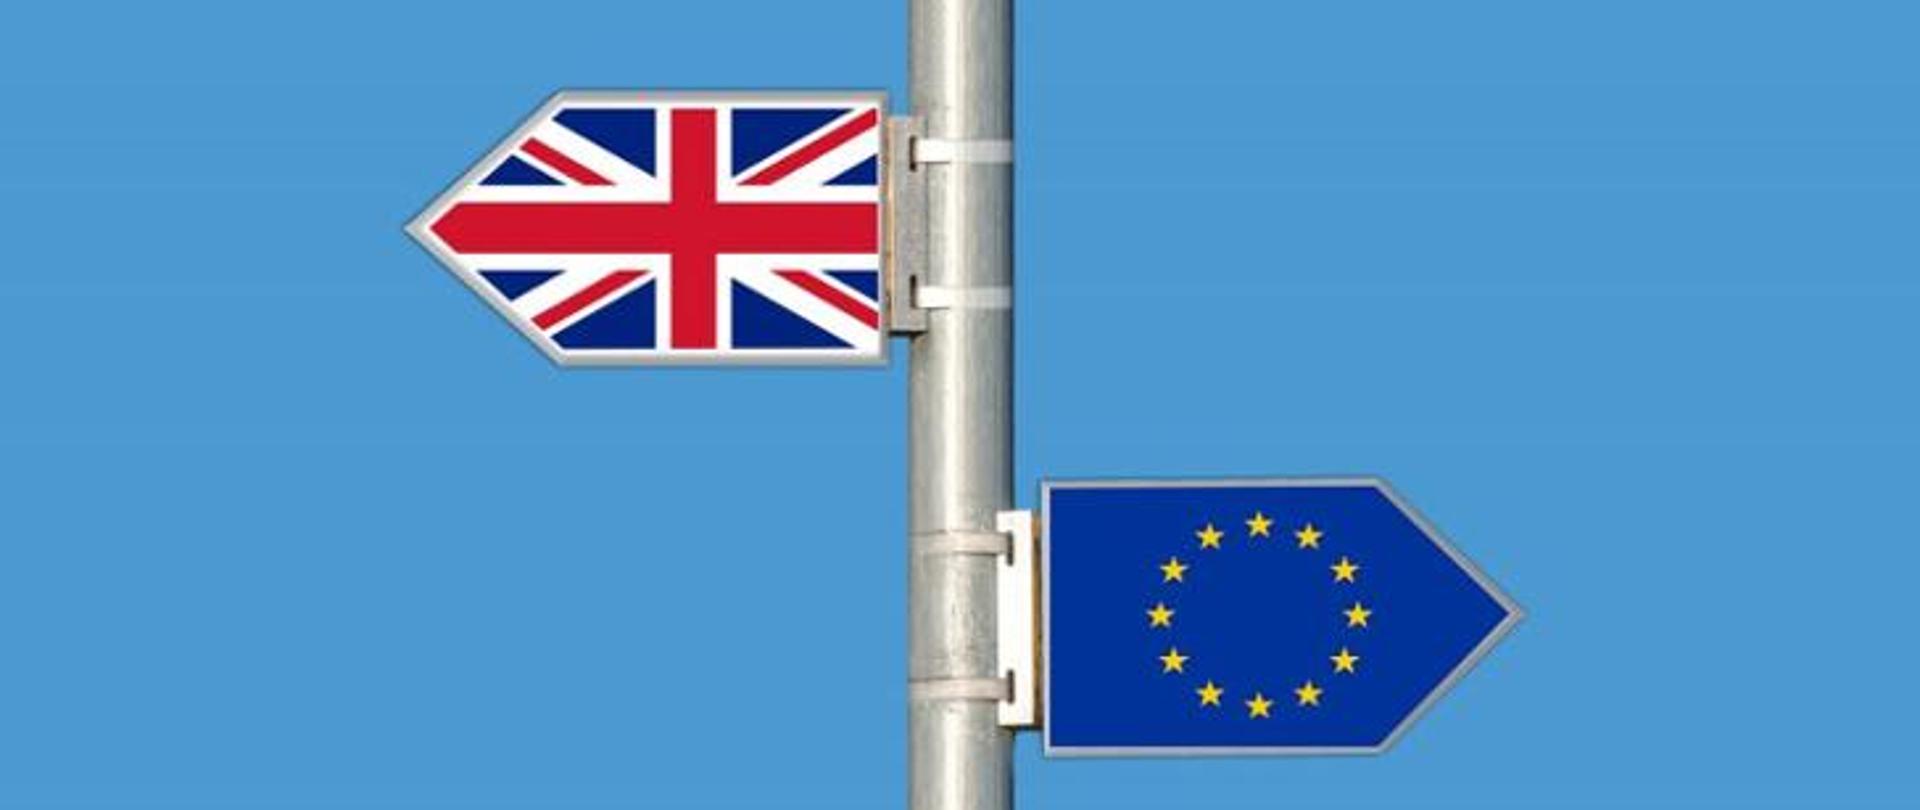 Na zdjęciu znajdują się dwie flagi na maszcie. Na górnej części faga Wielkiej Brytanii skierowana w lewą stronę, poniżej flaga Unii Europejskiej skierowana w prawą stronę